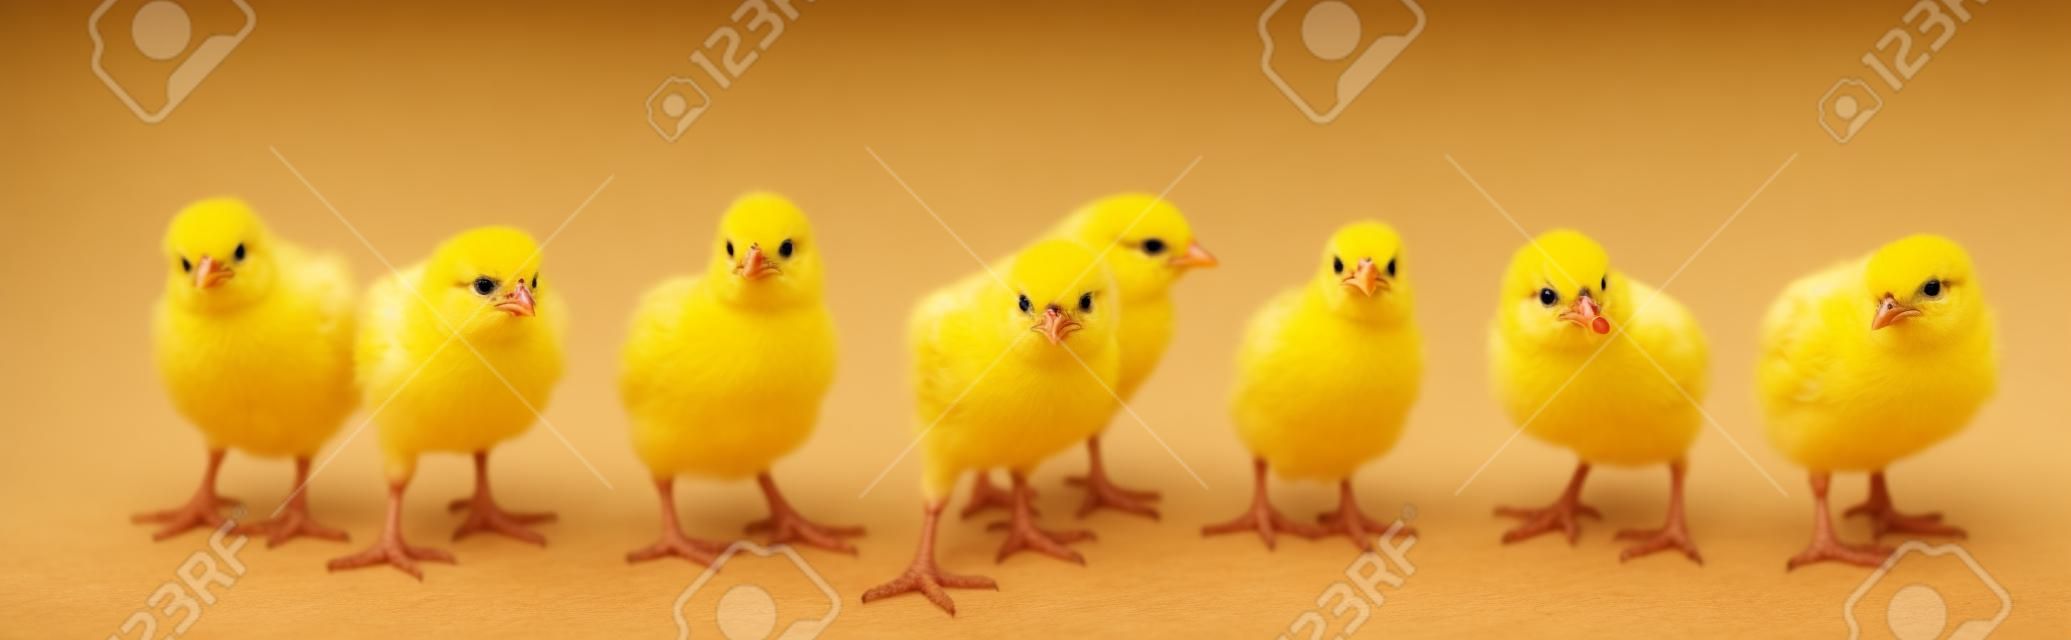 Soğuk papağan küçük sarı civcivler, beyaz zemin üzerinde izole. Çiftlik kuluçka makinesi yürümekte tavuklar.